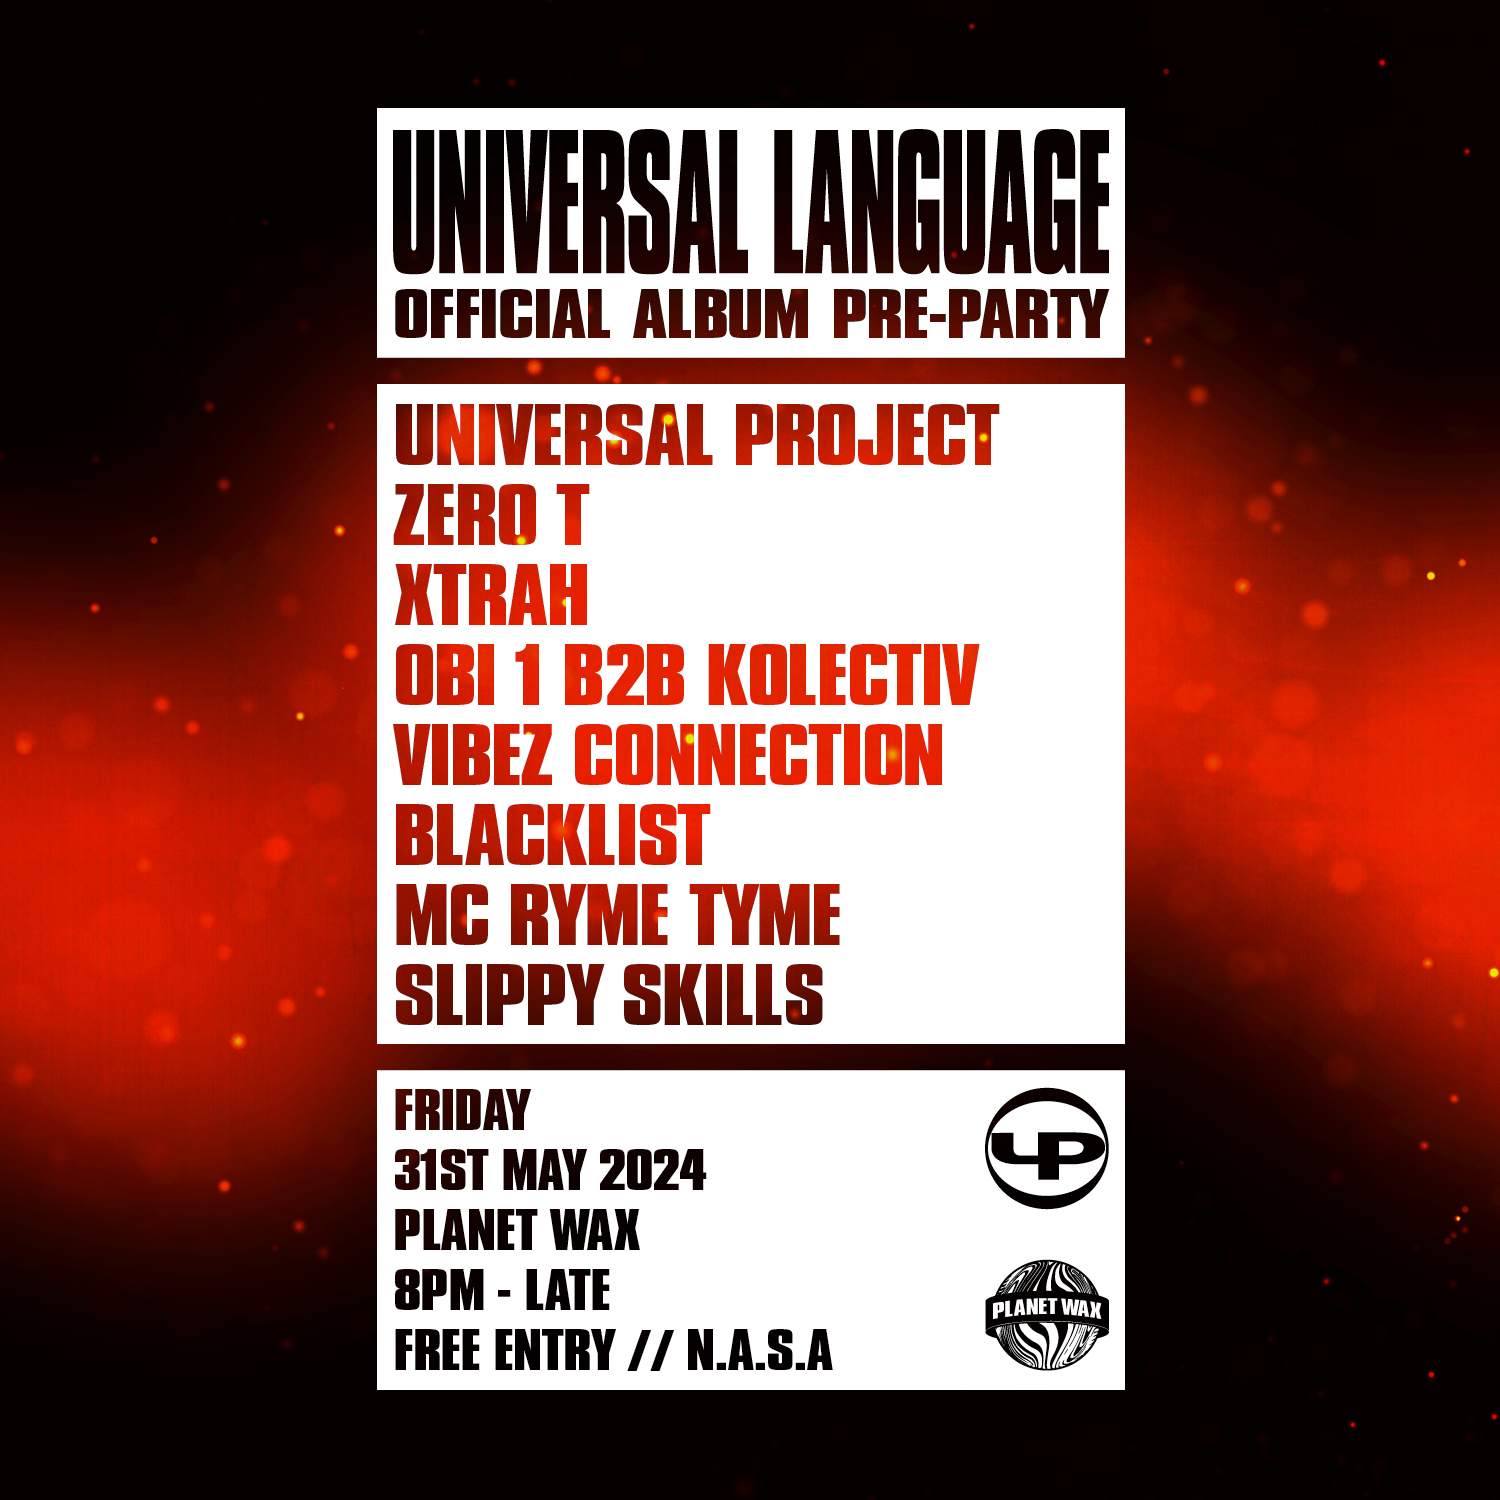 Universal Language Album Pre-Party - Página frontal